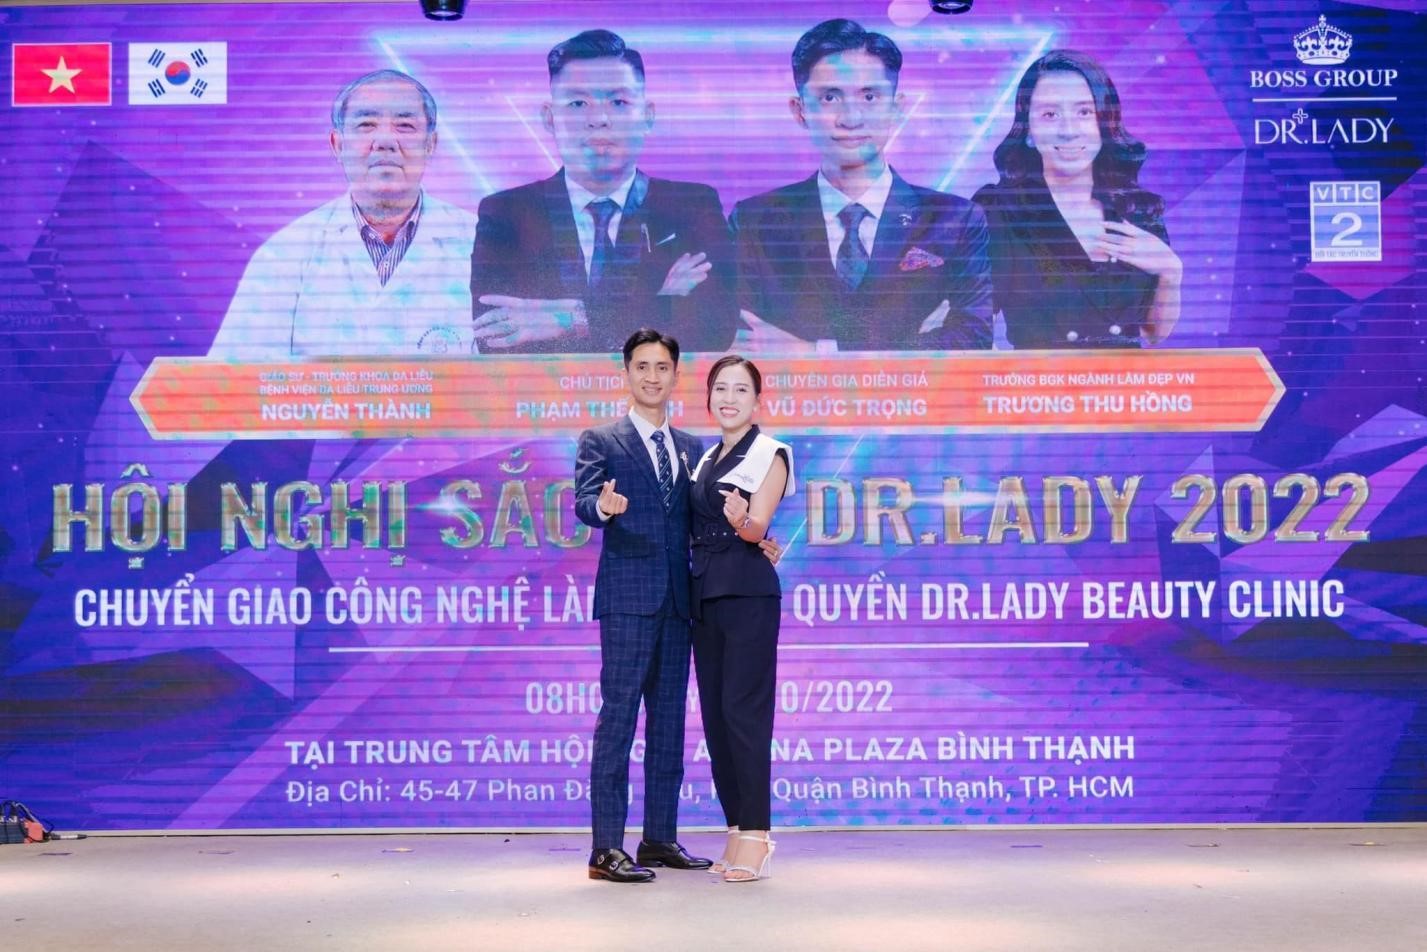 Doanh nhân Vũ Đức Trọng đưa Dr.Lady trở thành thương hiệu mỹ phẩm làm đẹp tốt cho phụ nữ Việt Nam - ảnh 3